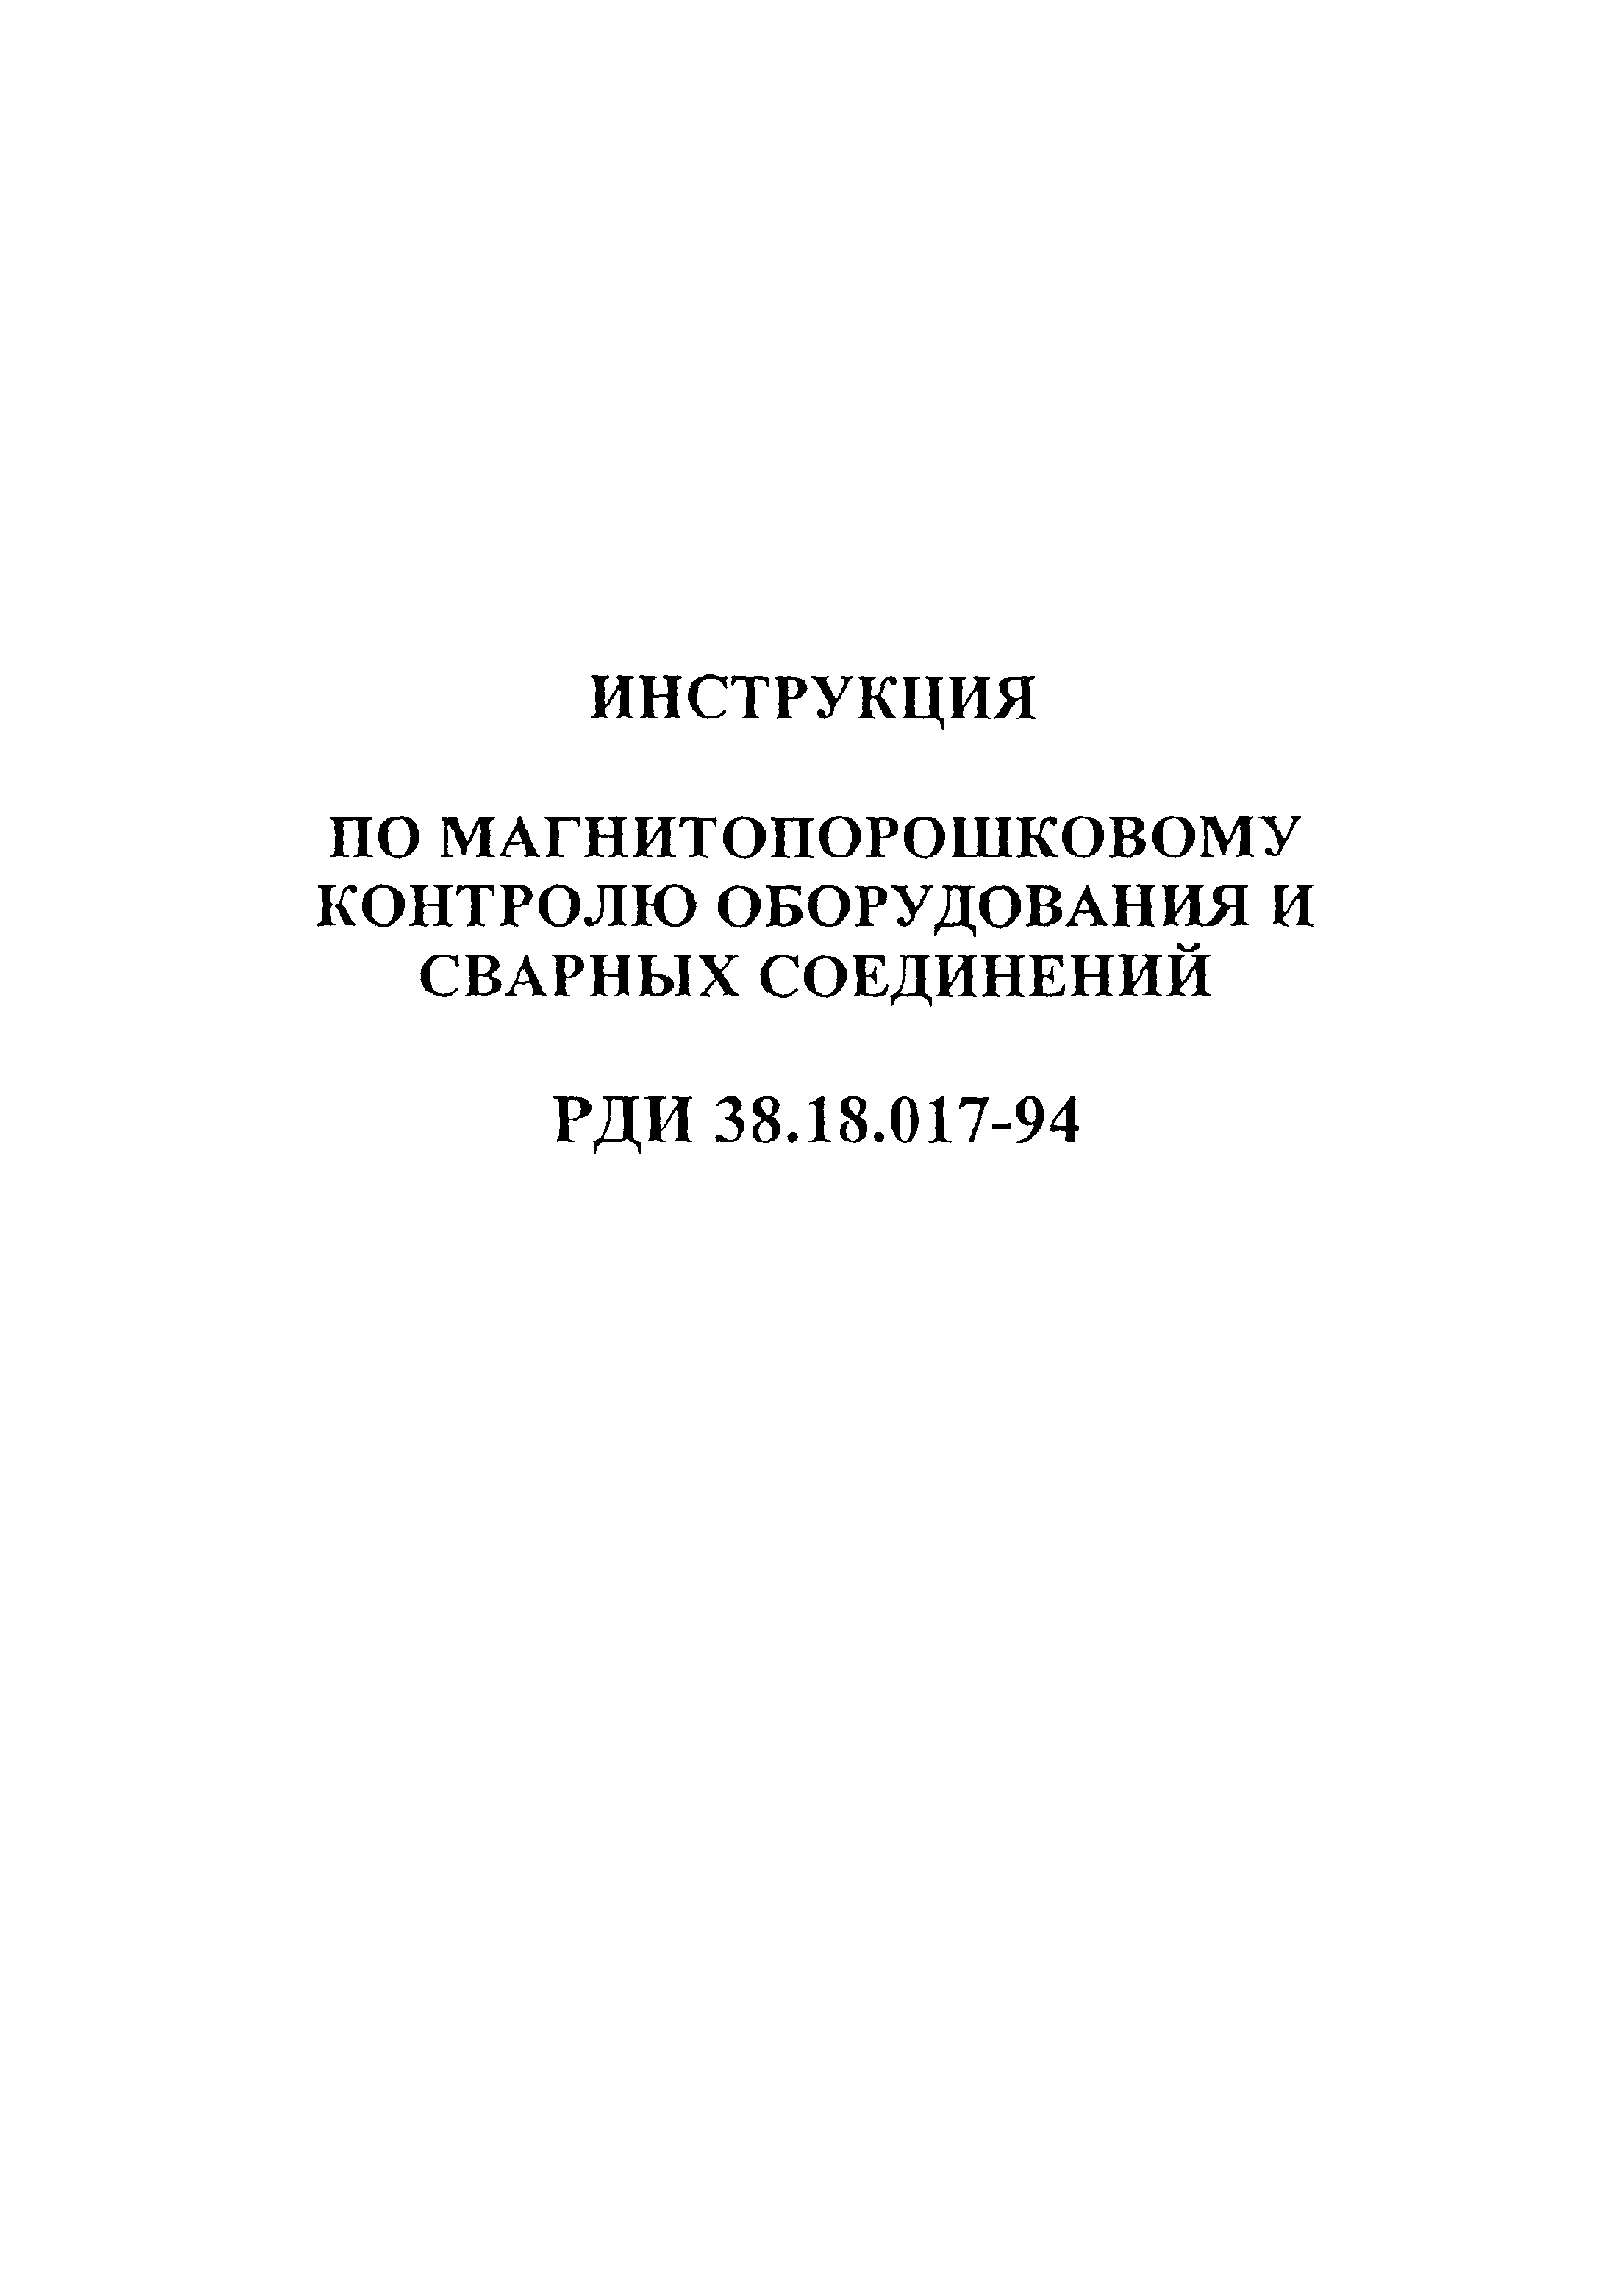 РДИ 38.18.017-94